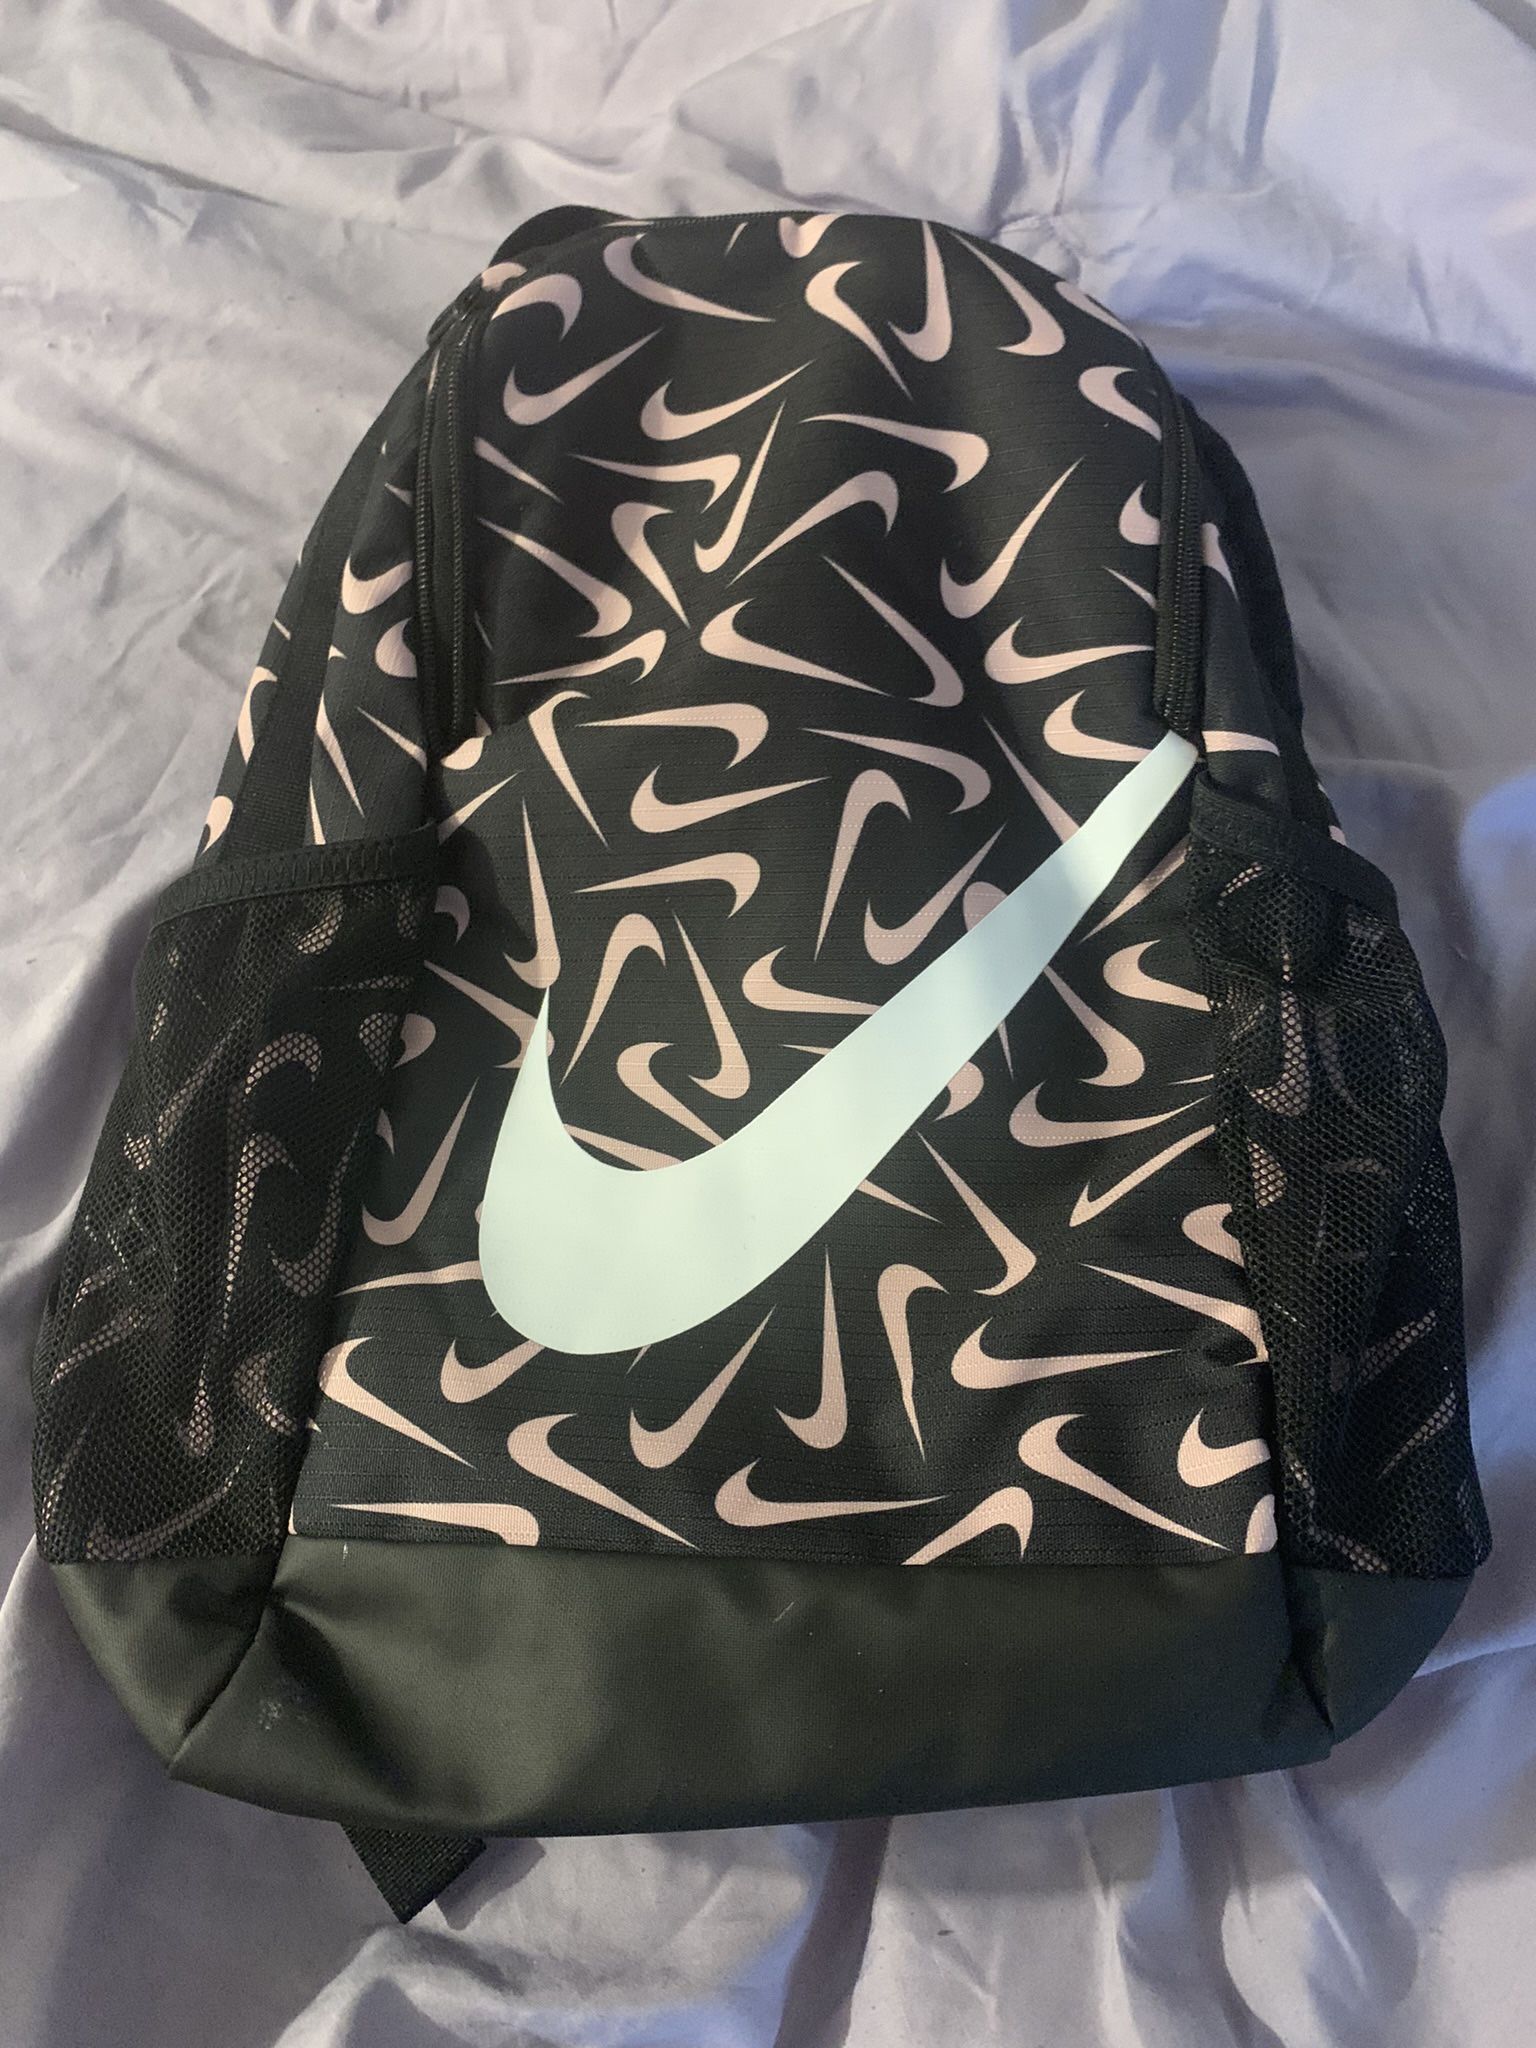 Nike Backpack 